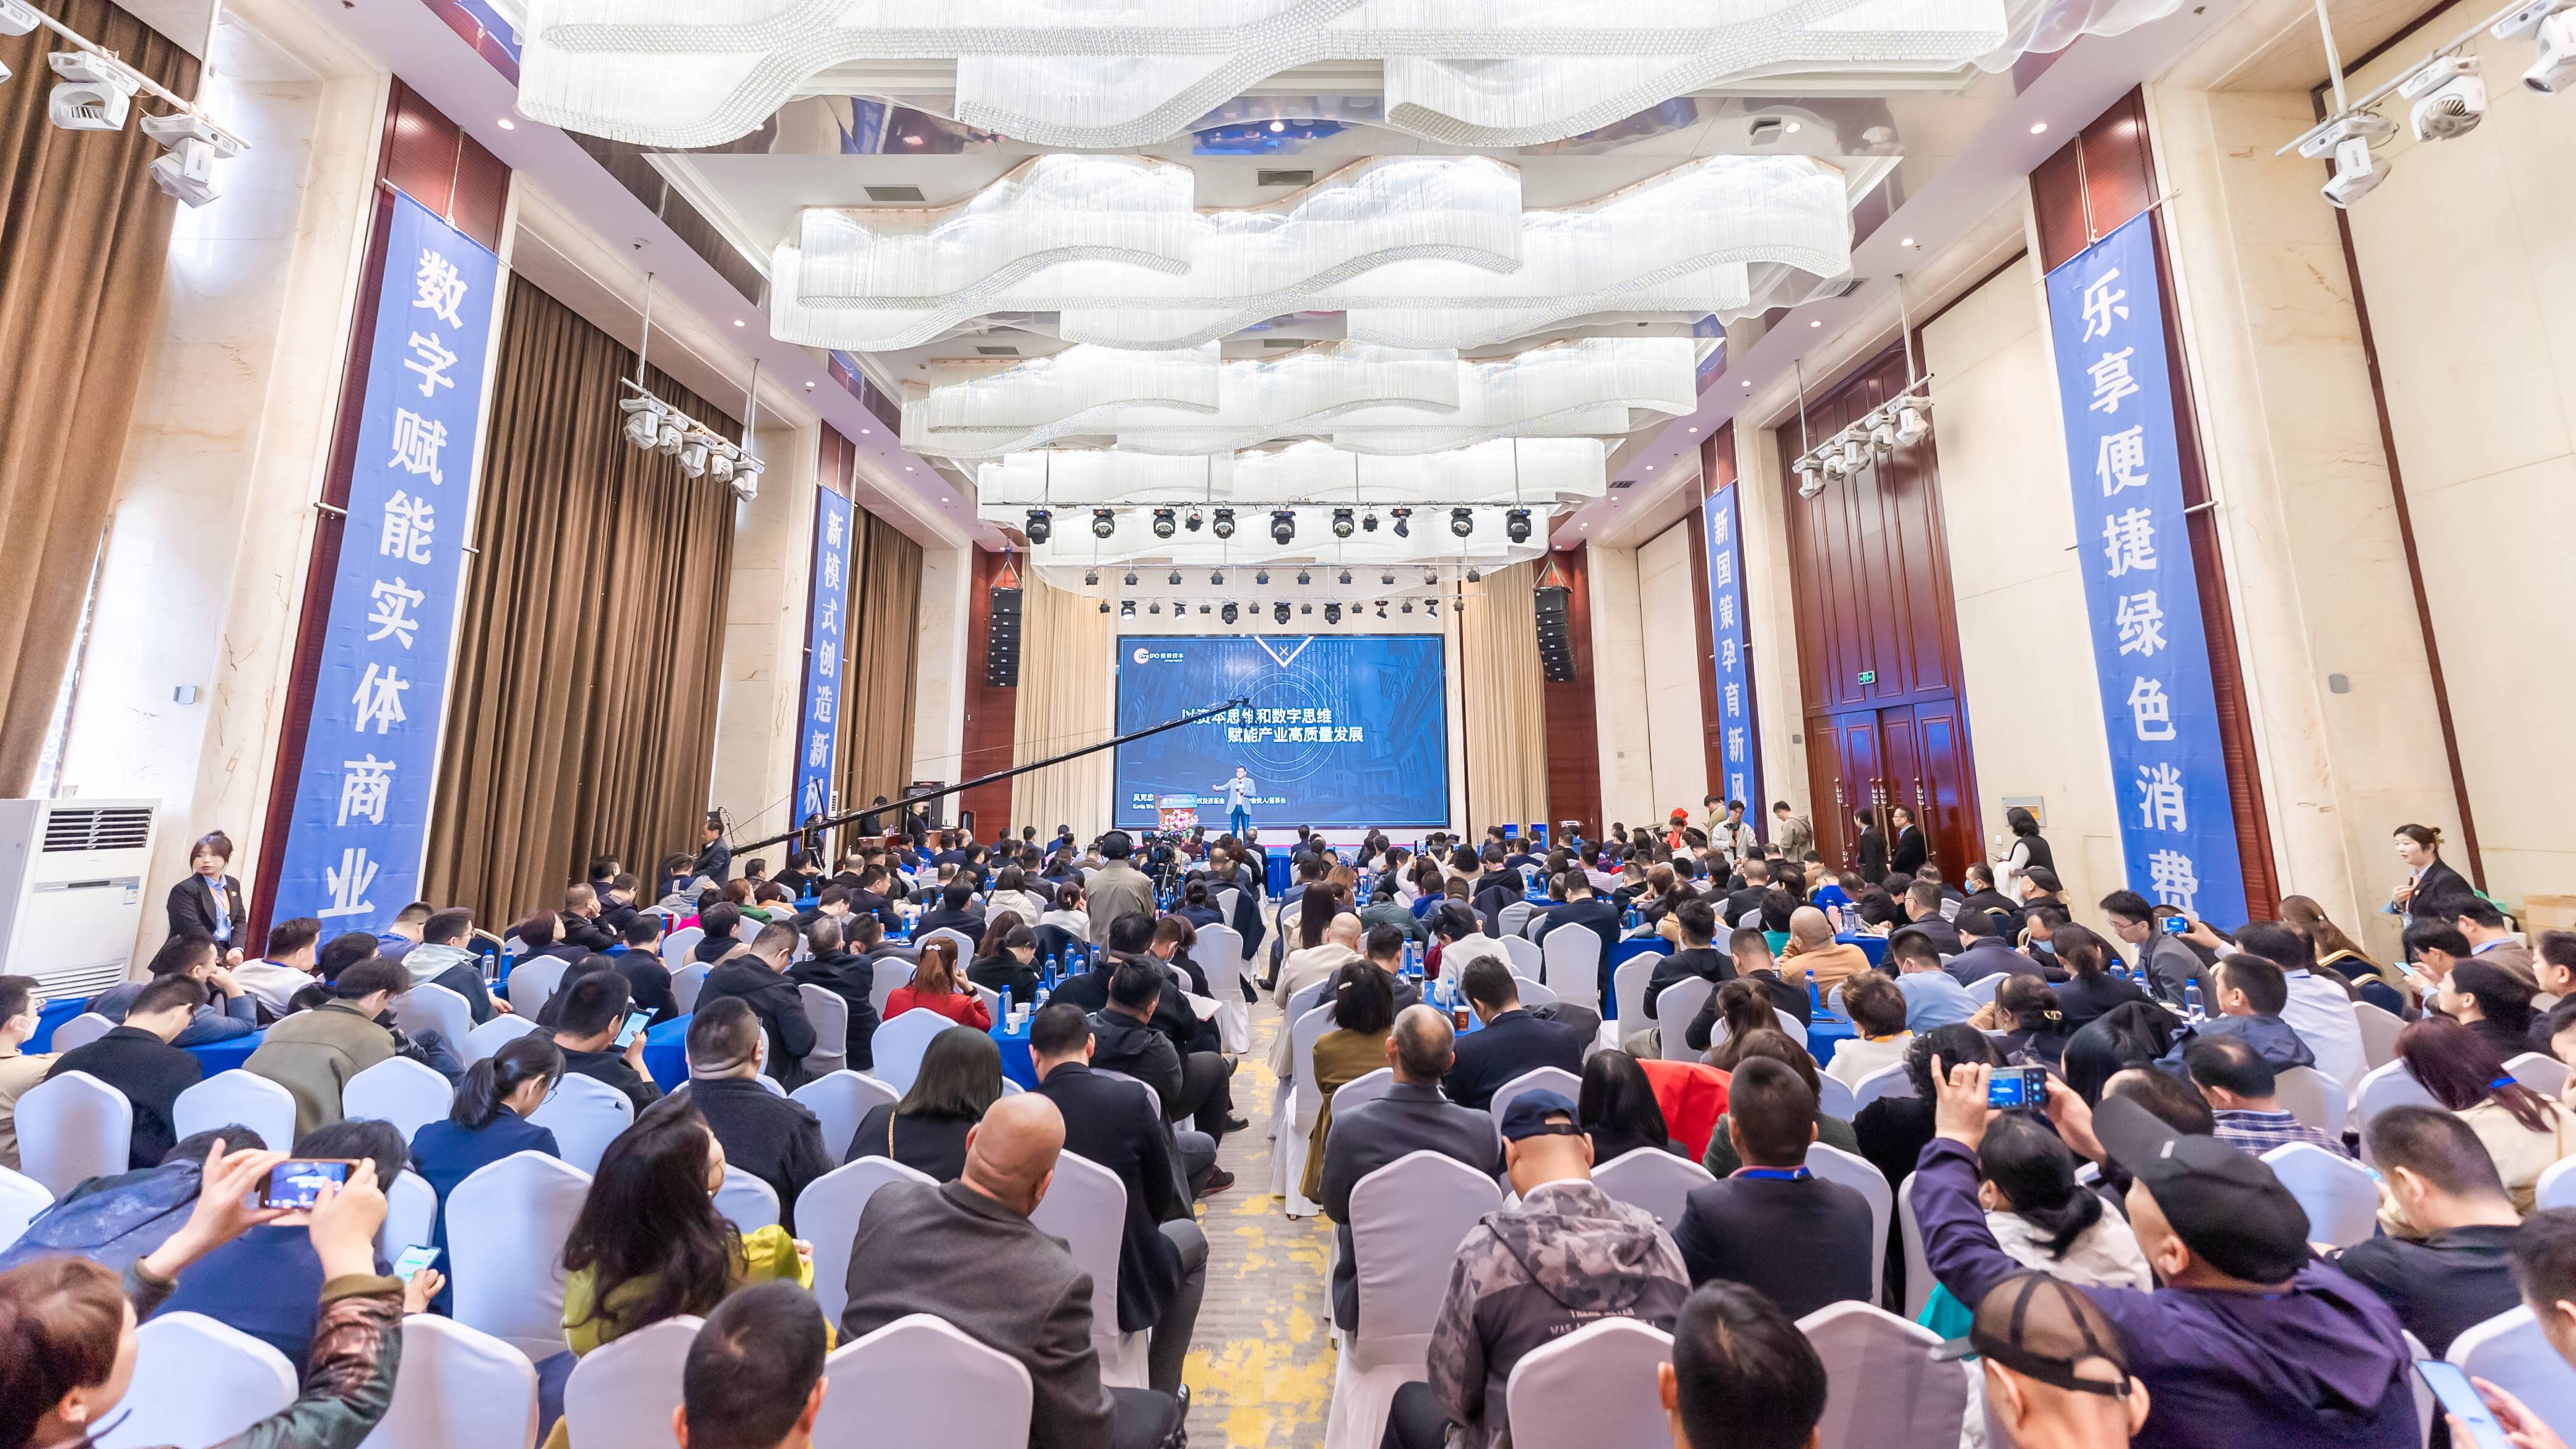 首届数字化赋能实体商业峰会在济南举行 聚焦数字货币新模式助力实体经济